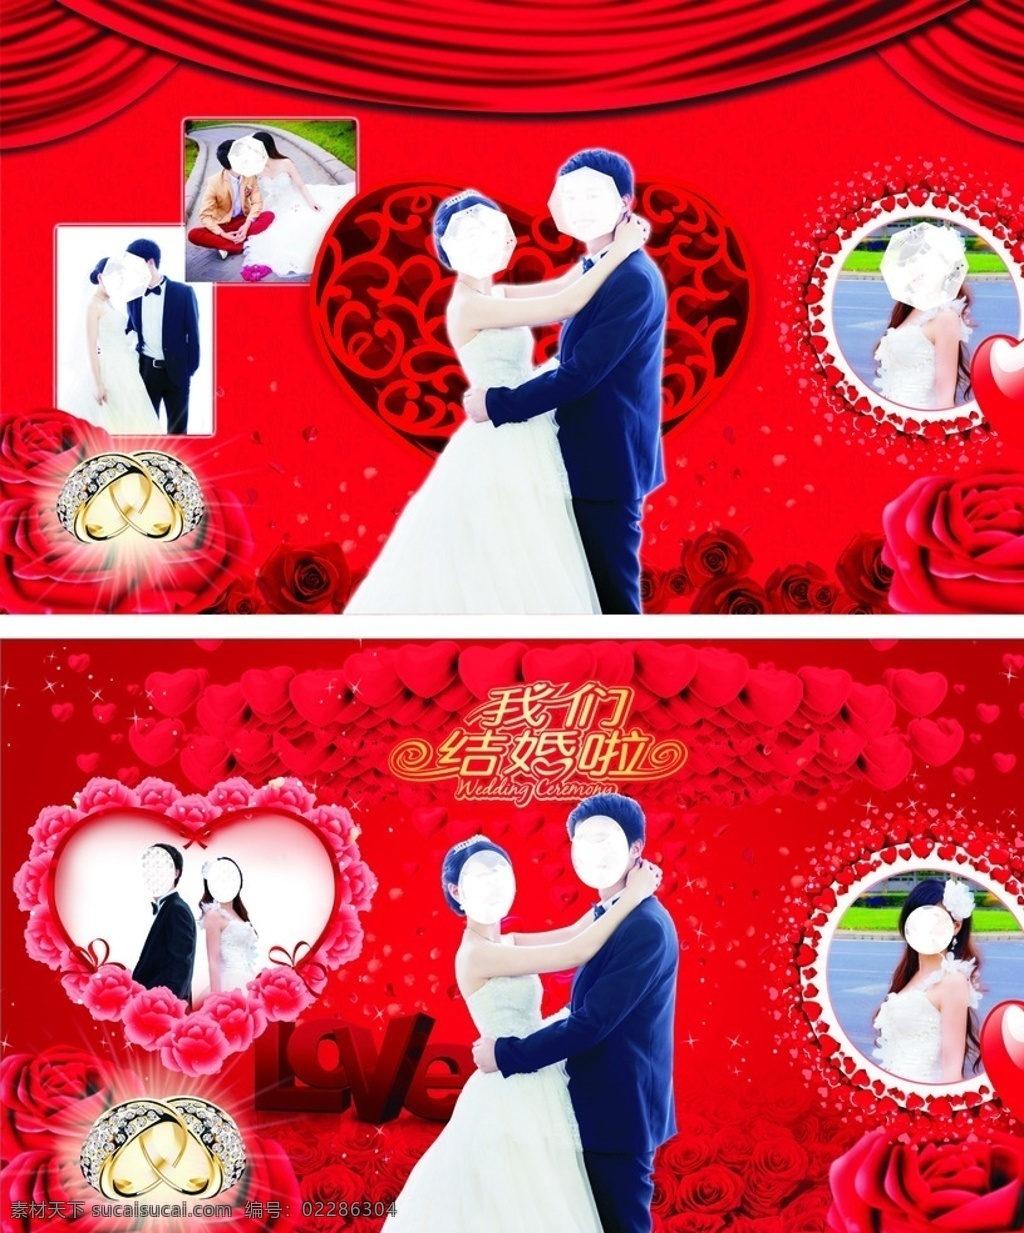 婚庆背景 婚庆背景模板 结婚典礼 心形照片 喜庆红色 love 玫瑰花 幸福 浪漫 婚纱照